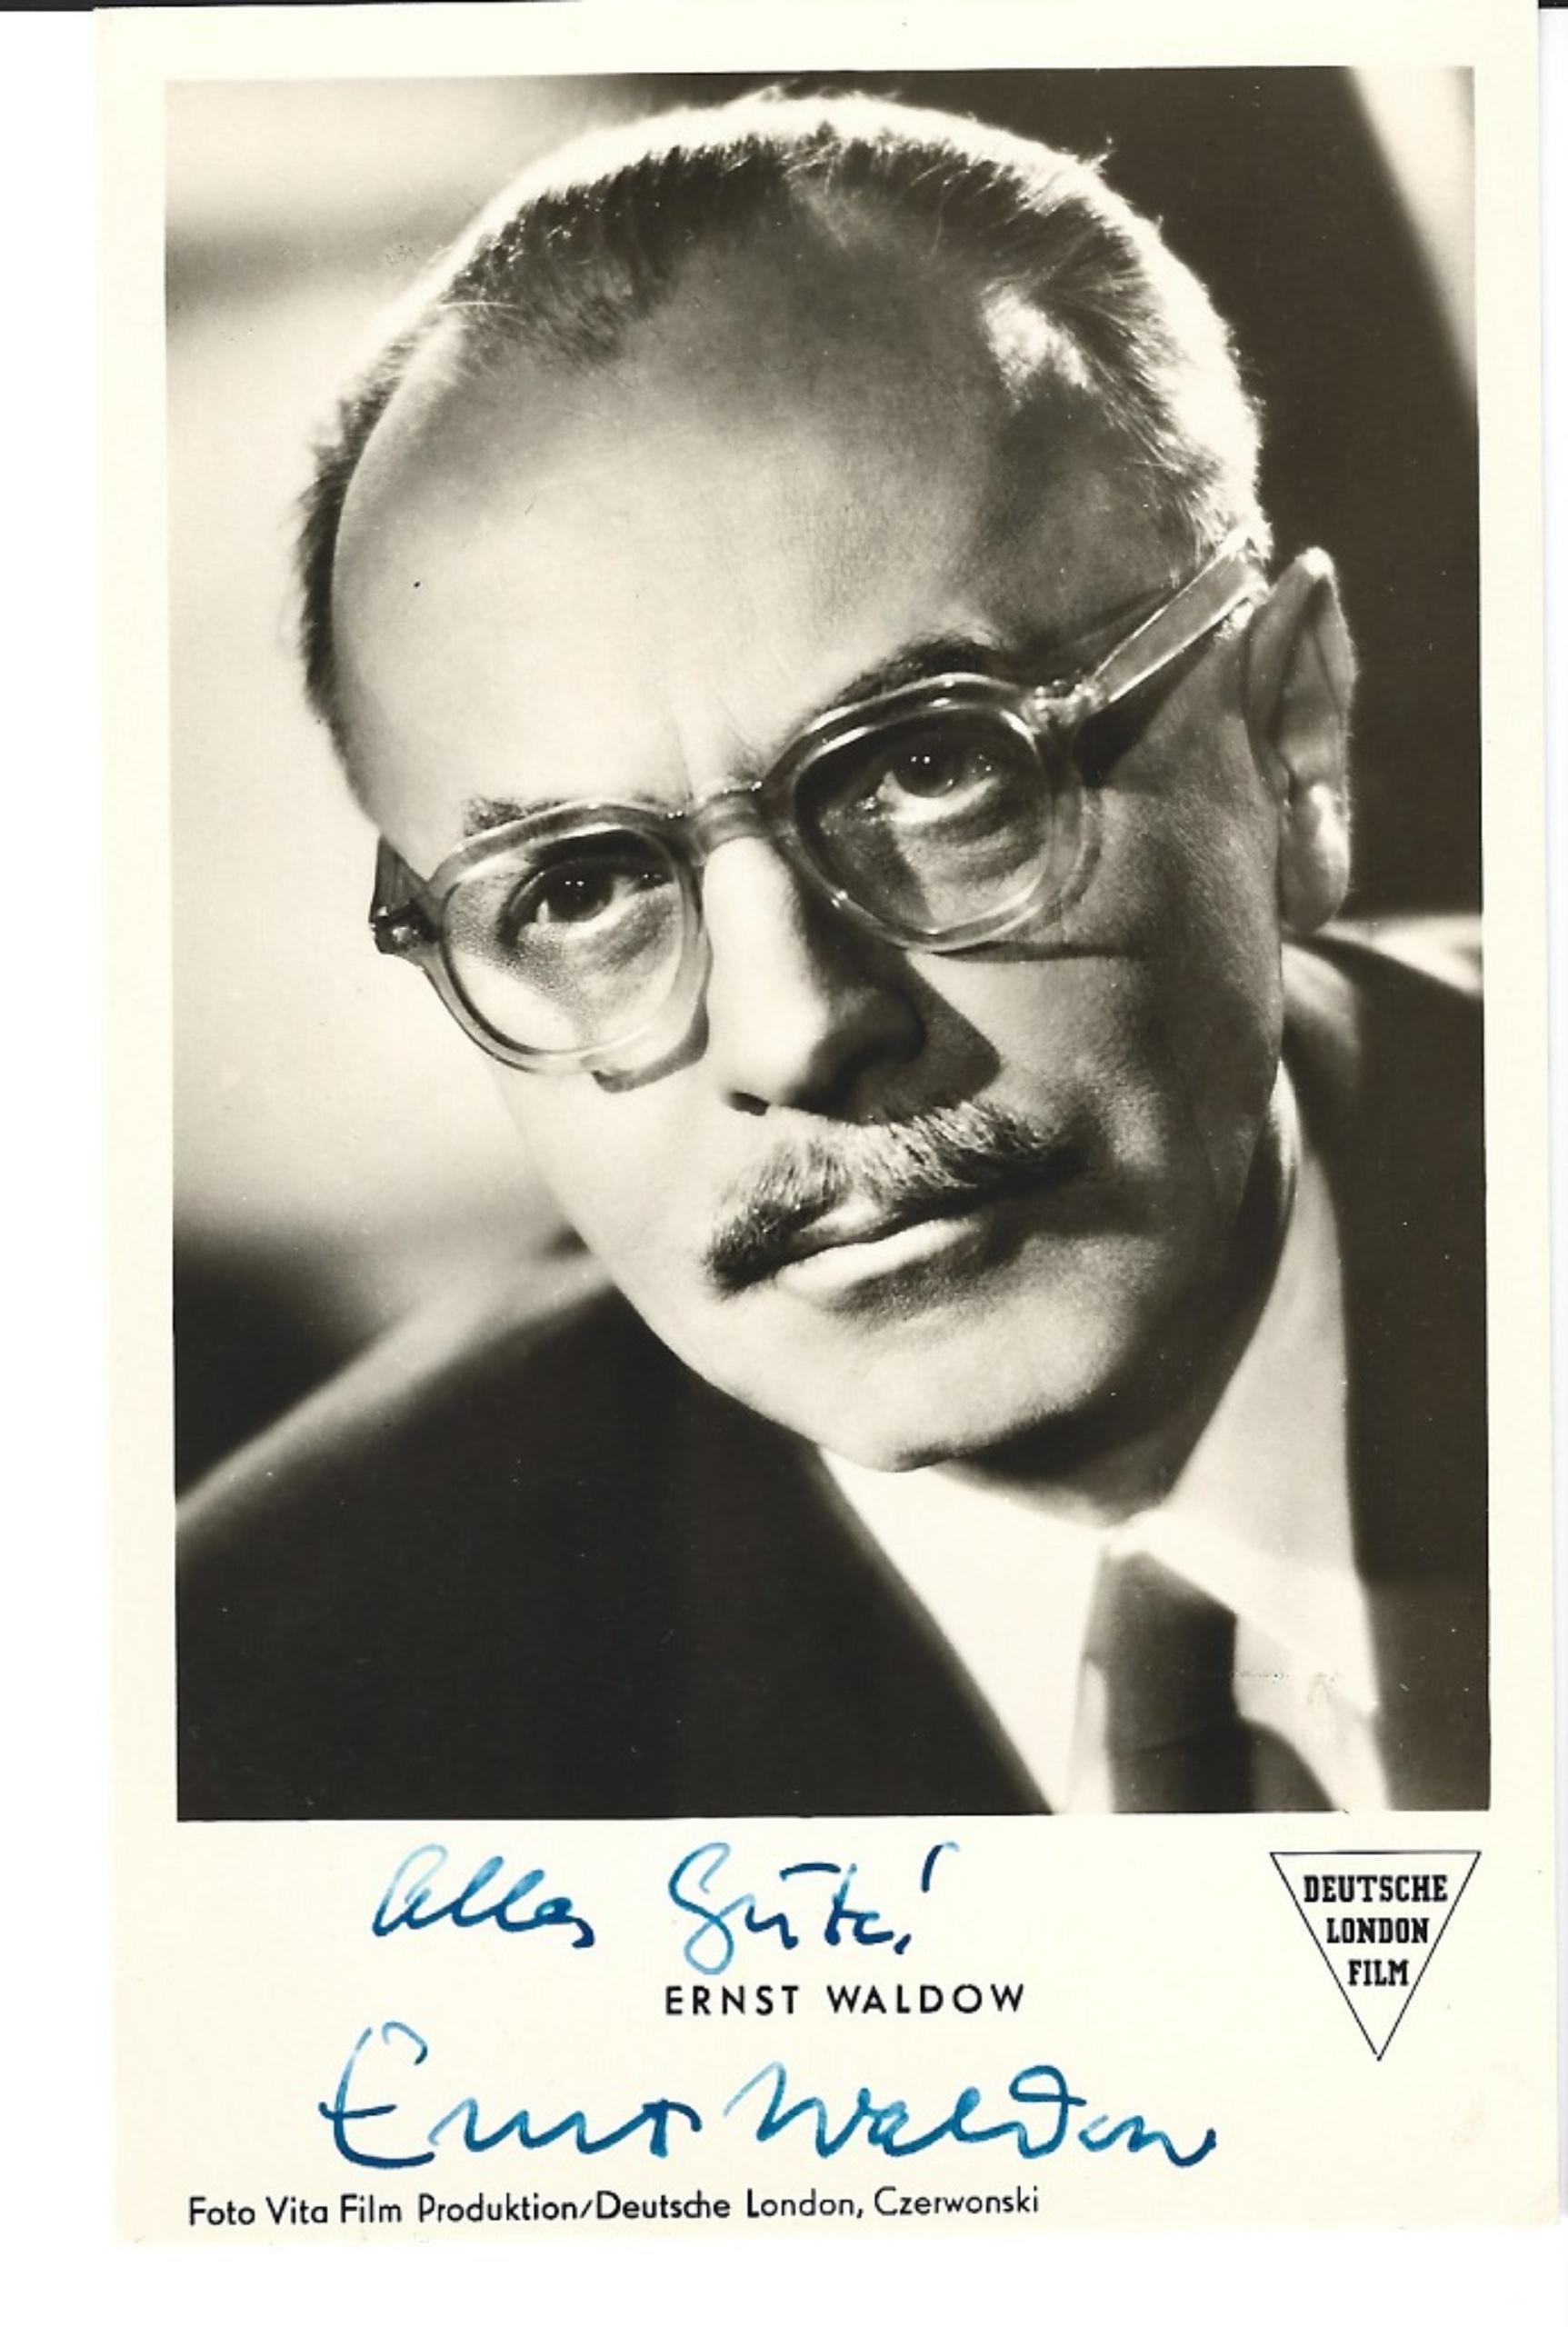 Unknown Portrait Photograph - Autographed Portrait of Ernst Waldow - Vintage b/w Postcard - 1950s